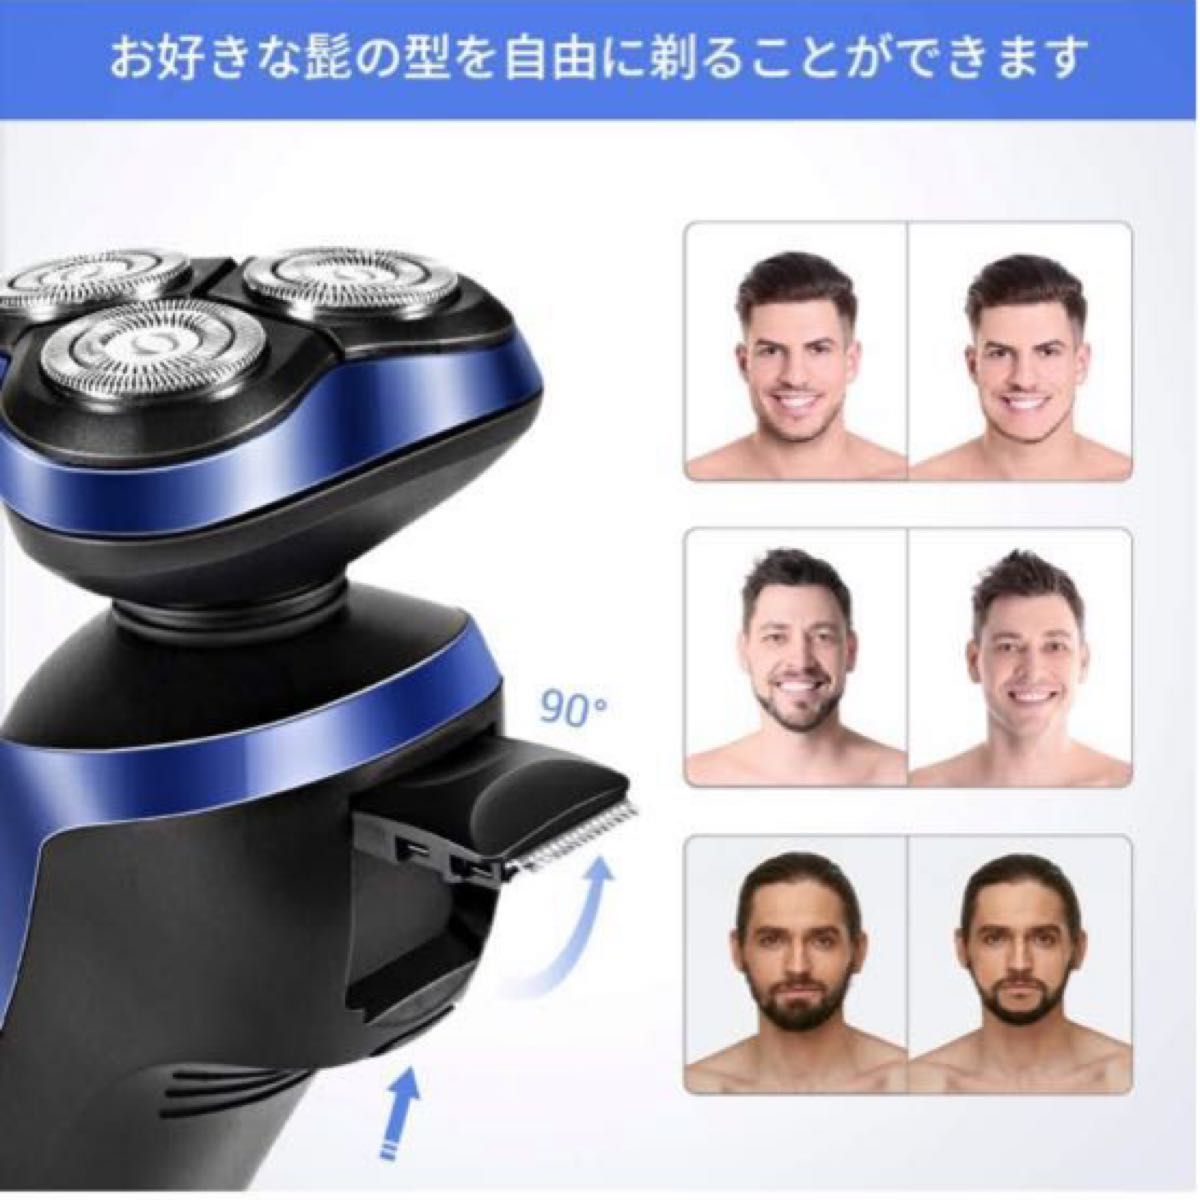 シェーバー メンズ髭剃り回転式 IPX7防水水洗い/お風呂剃り可能USB充電式 LEDディスプレイー日本語説明書付き最新人気モデル